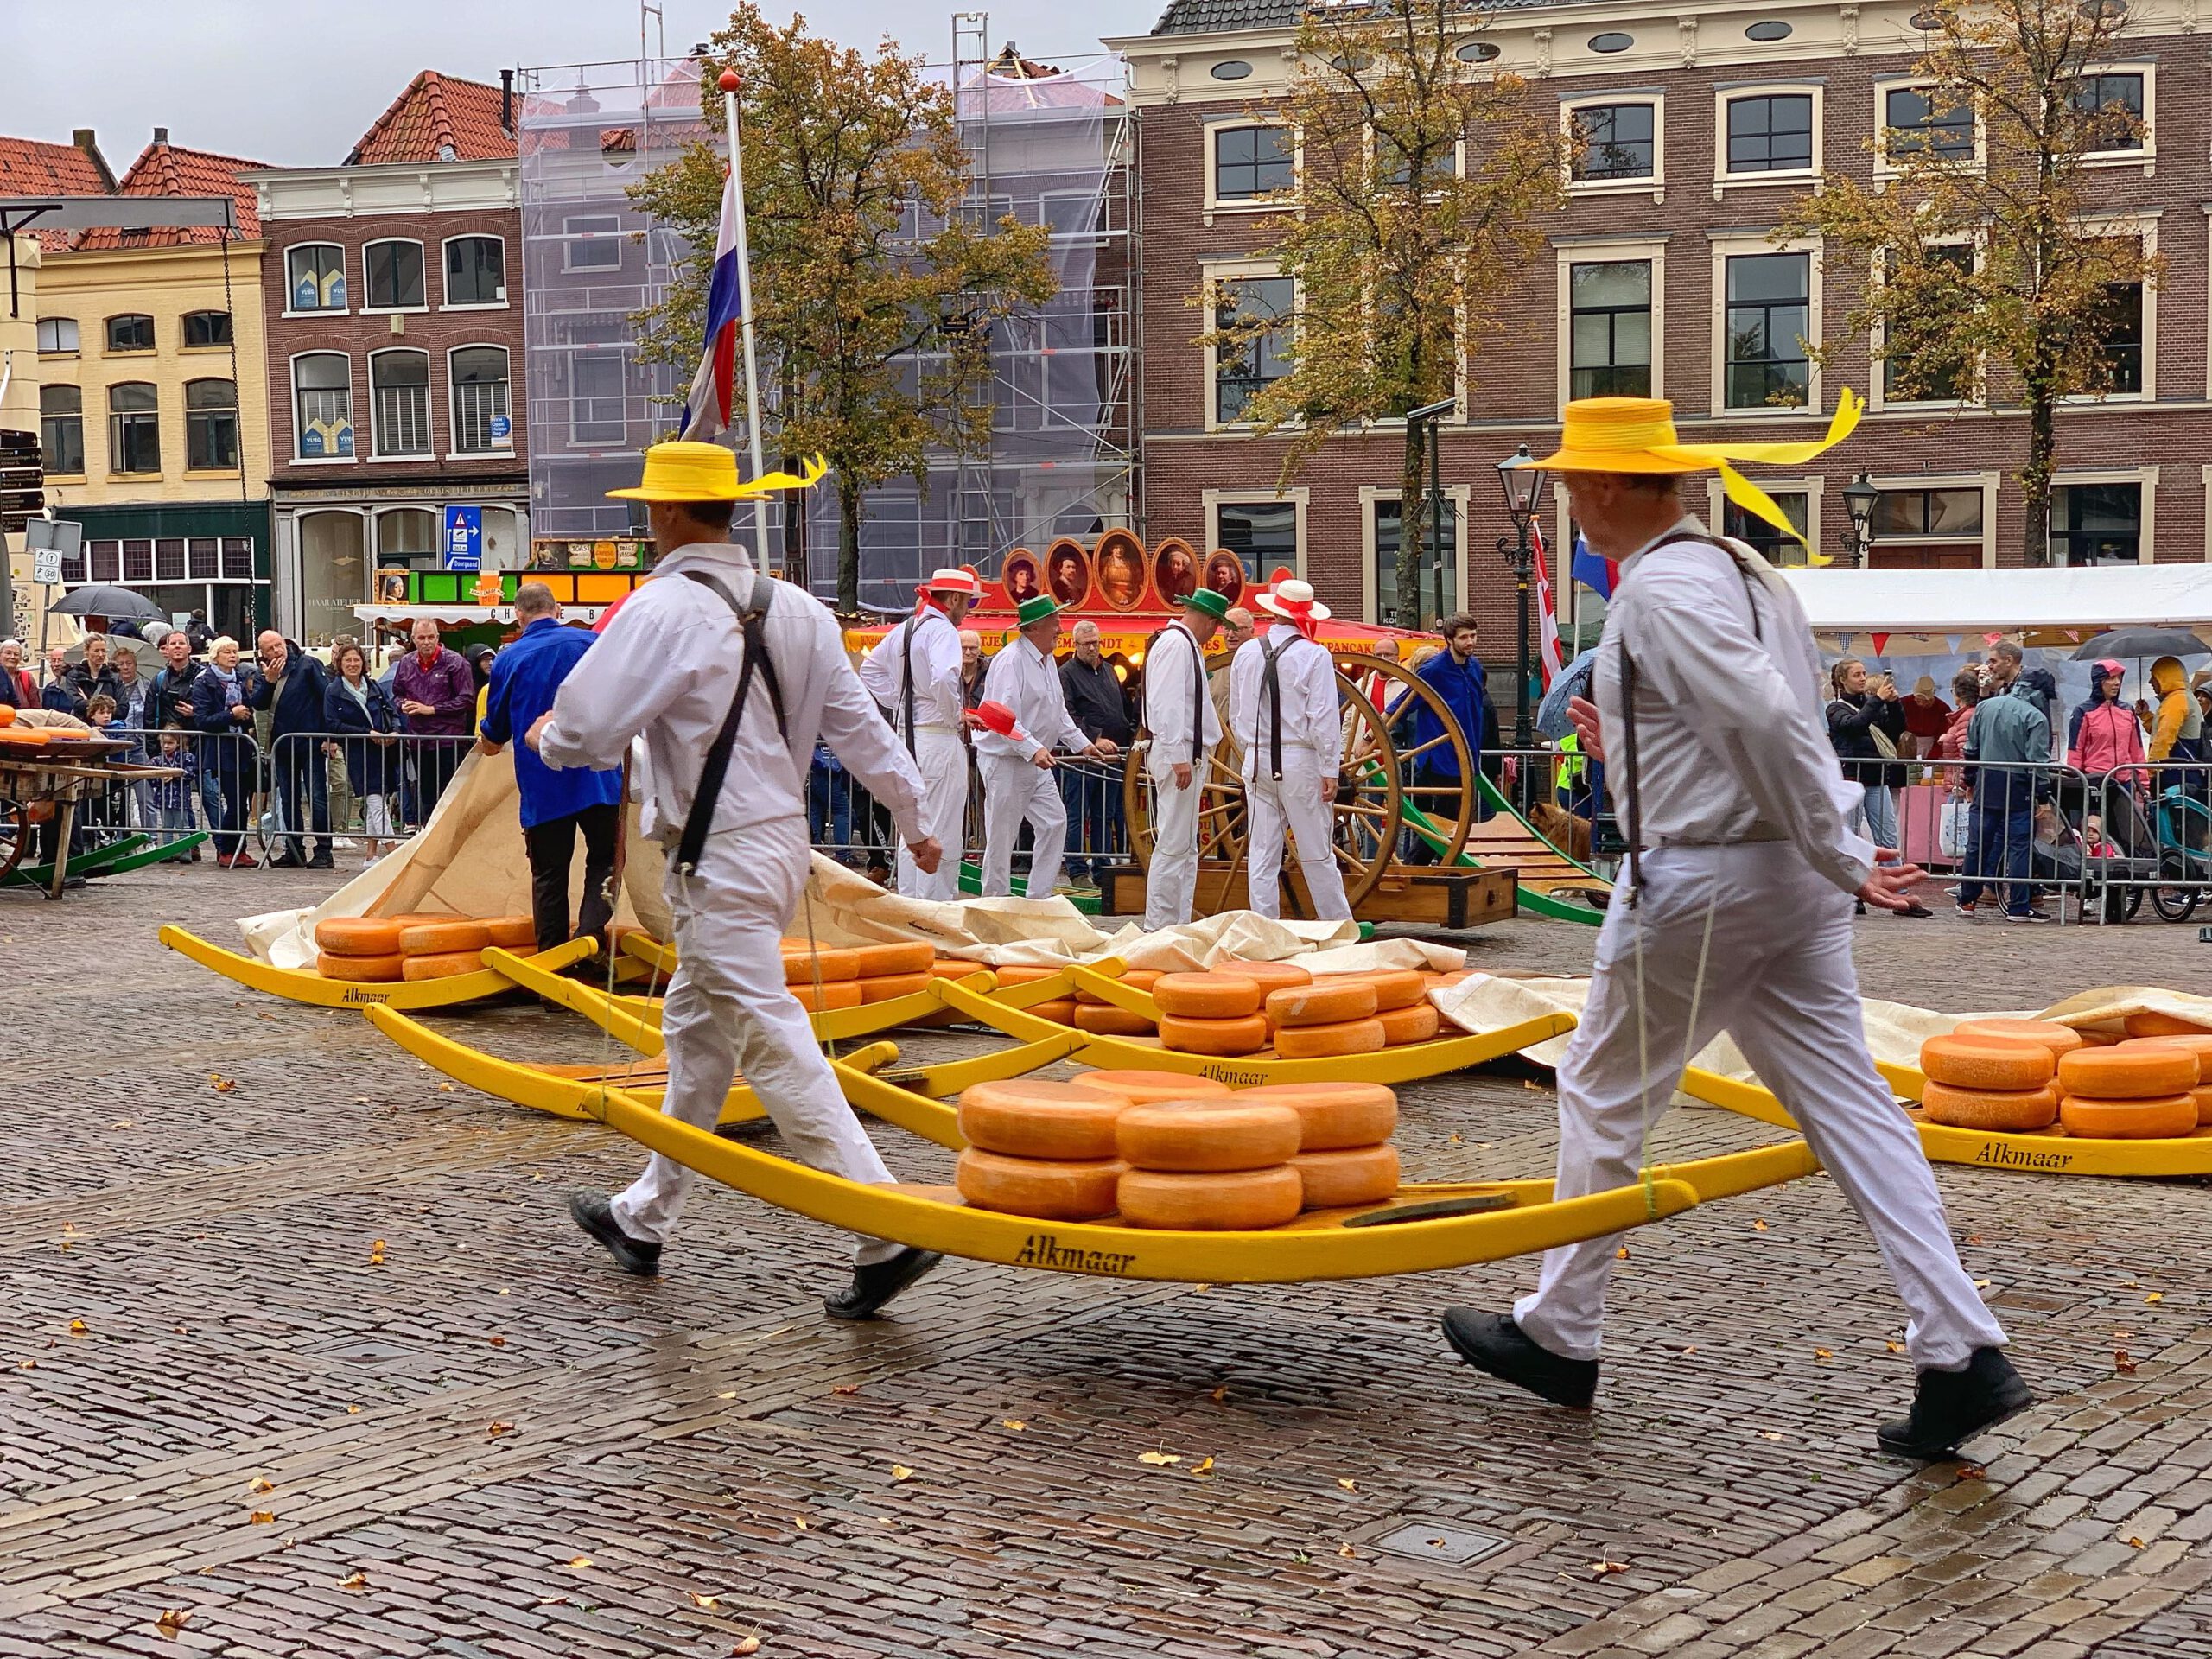 Käseträger in Alkmaar